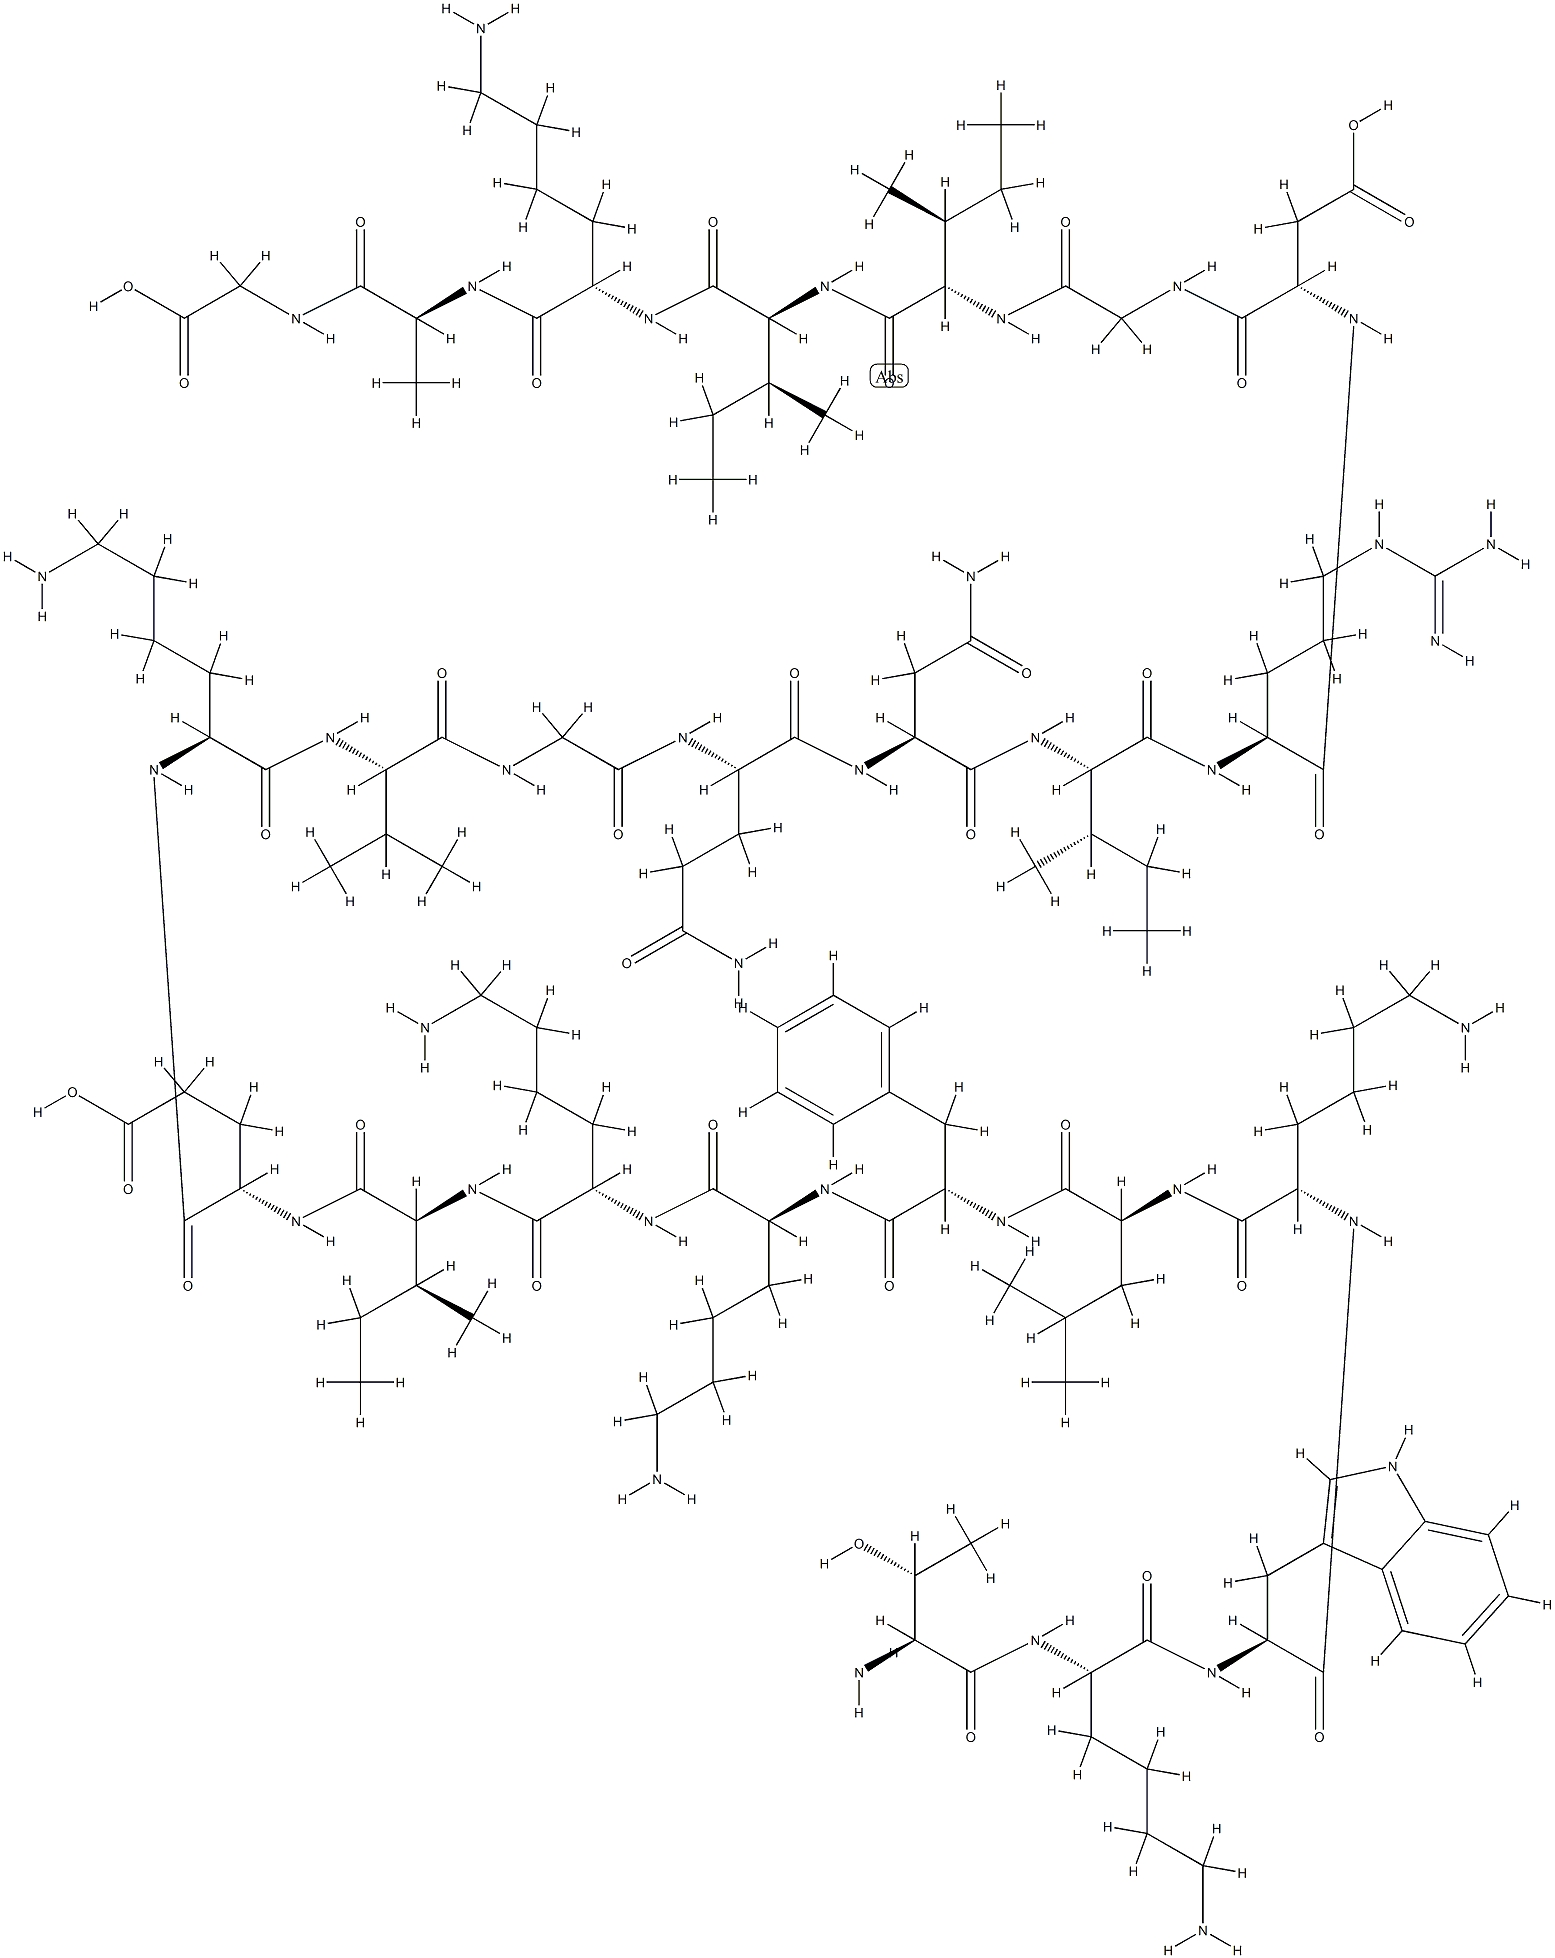 cecropin A (1-33)|